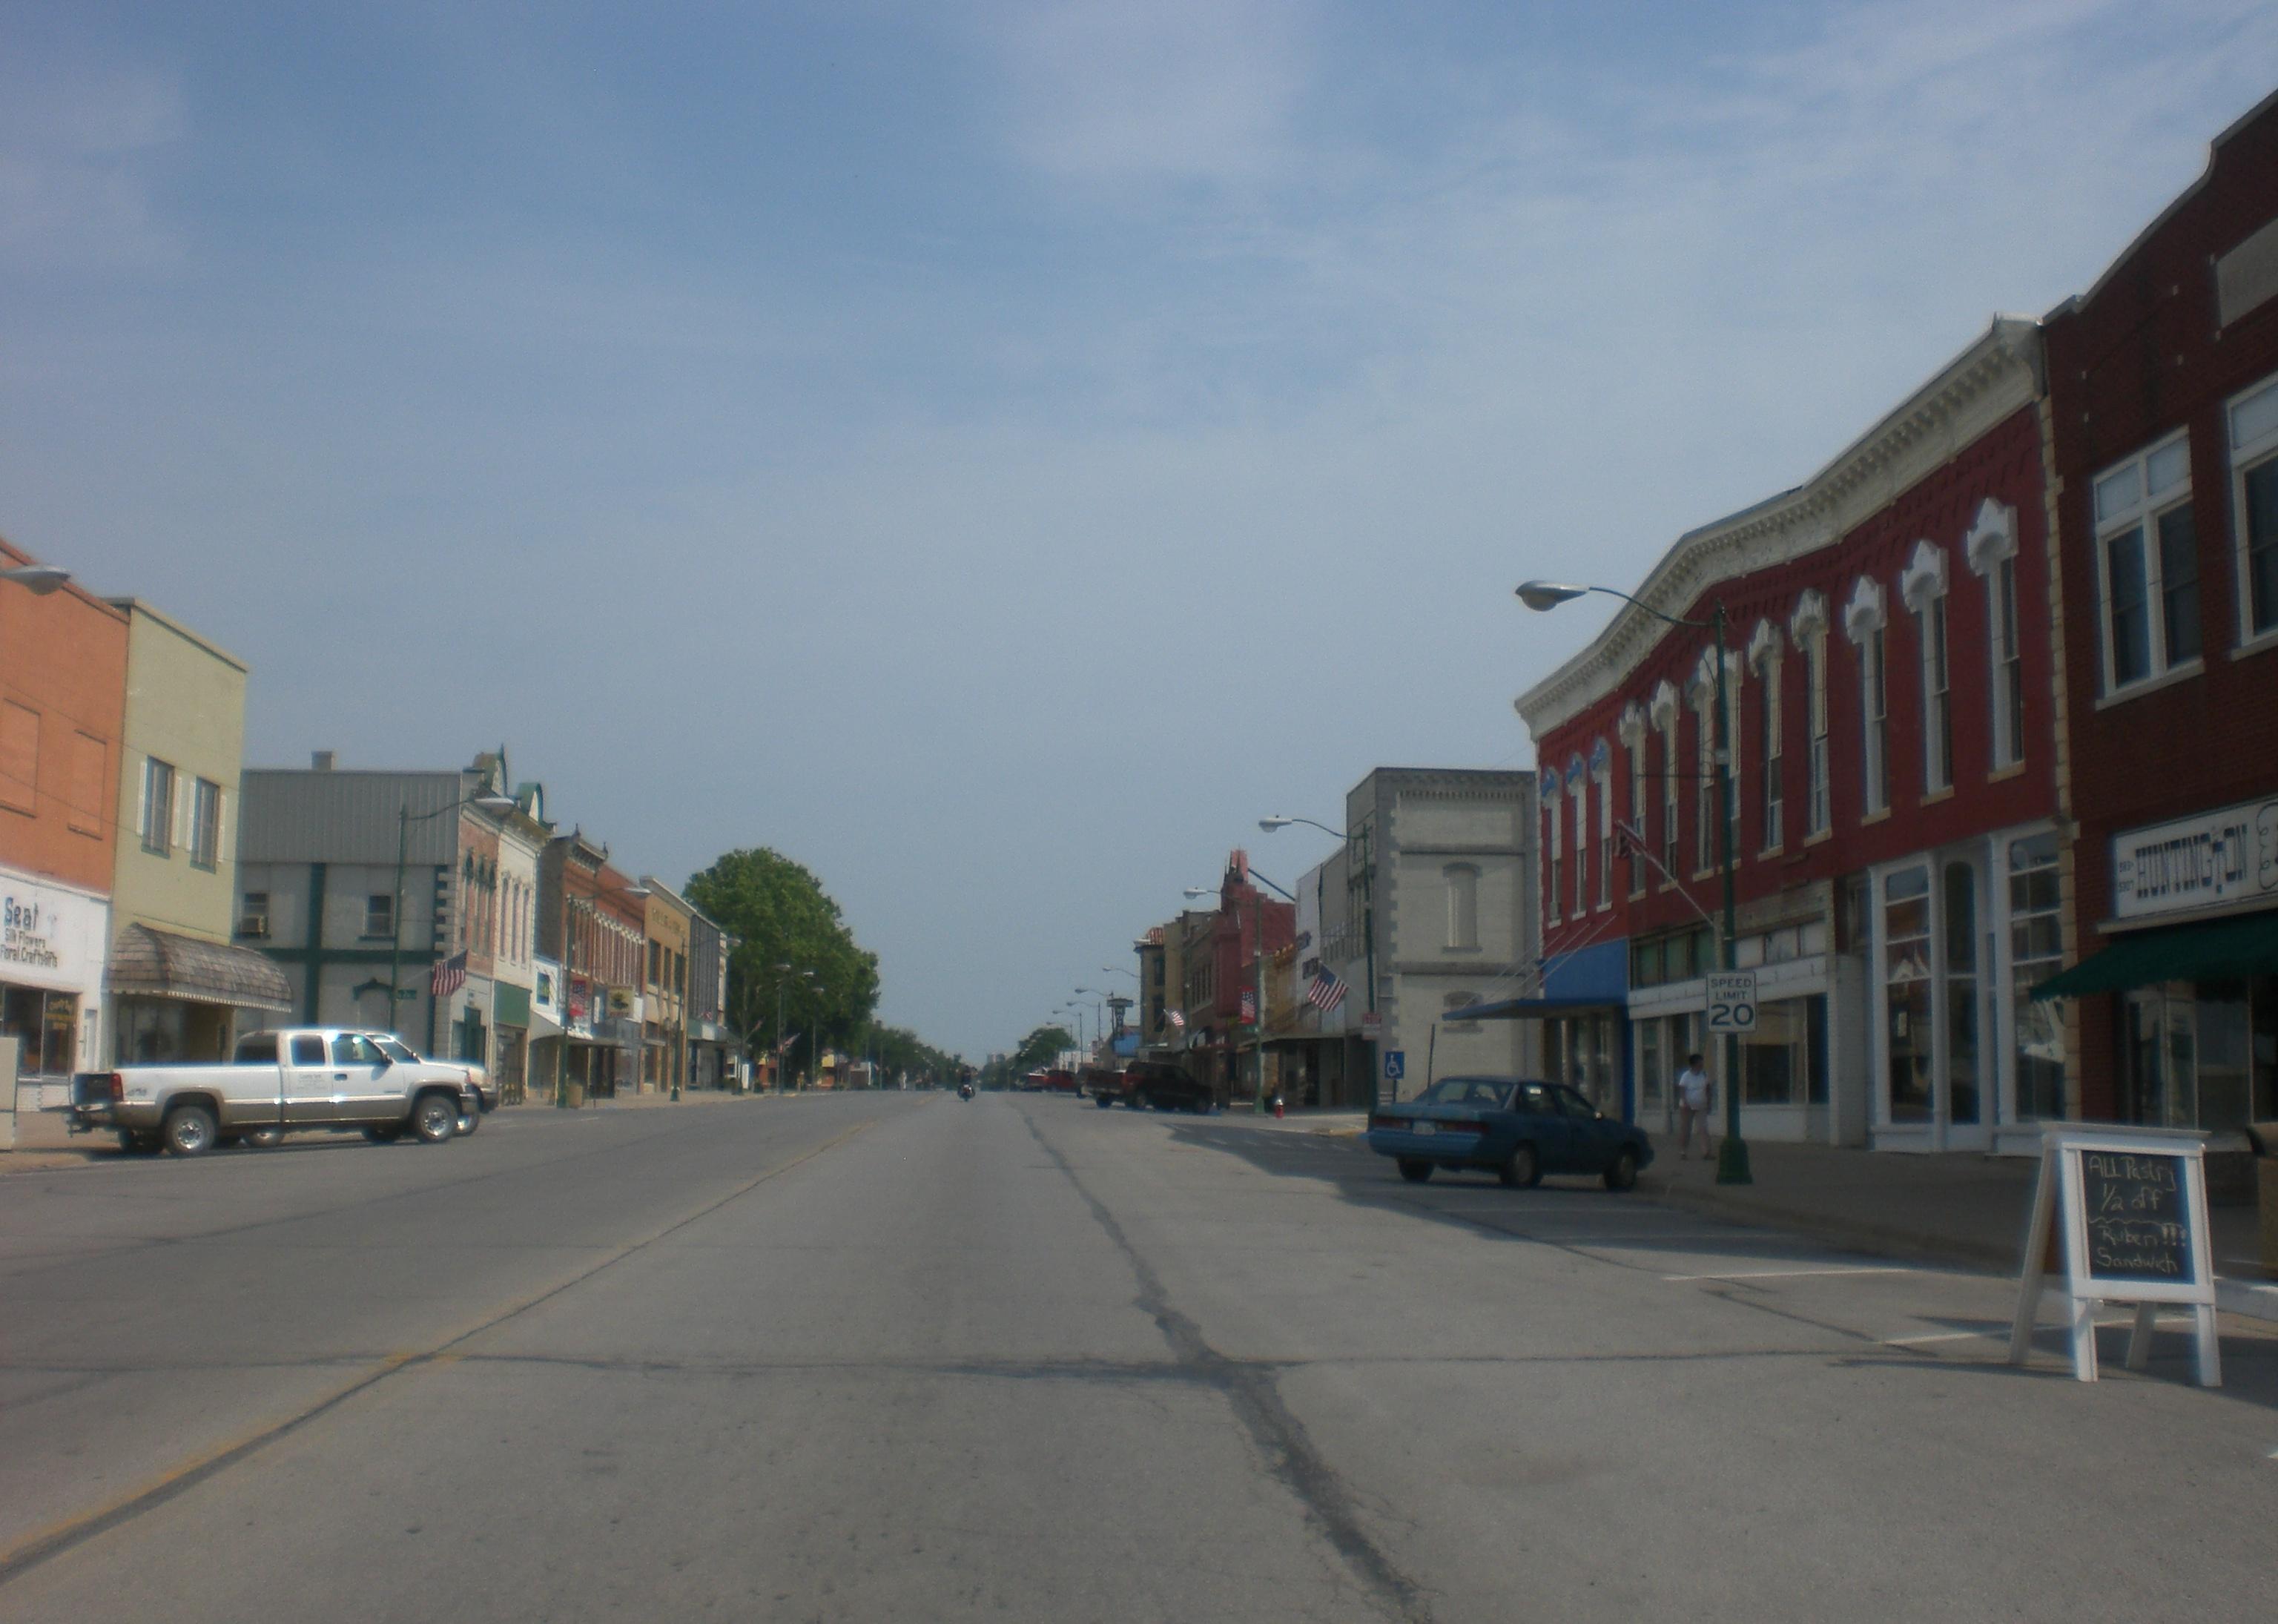 View of Main street in Eureka.